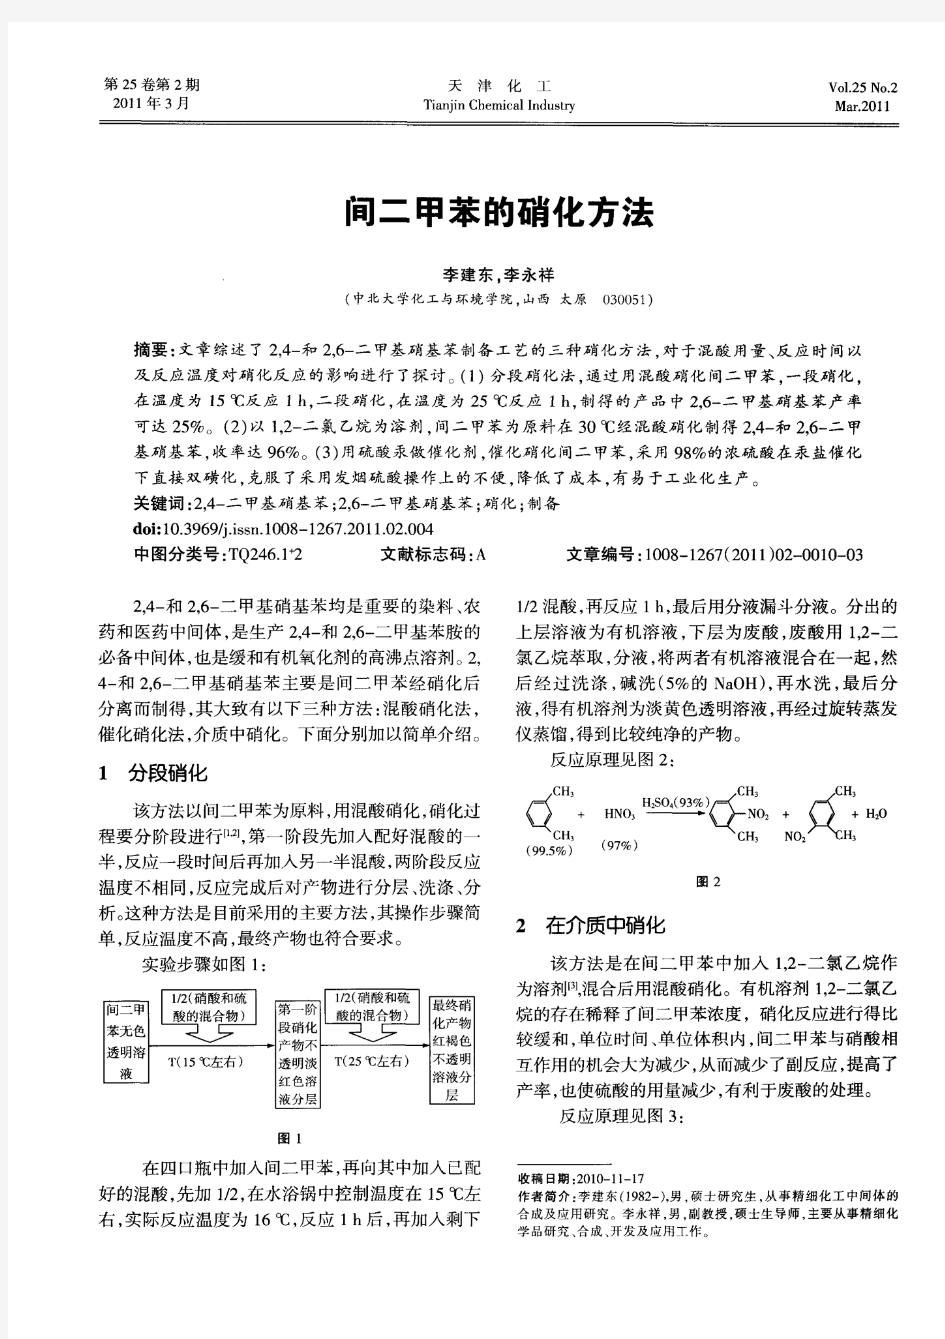 间二甲苯的硝化方法